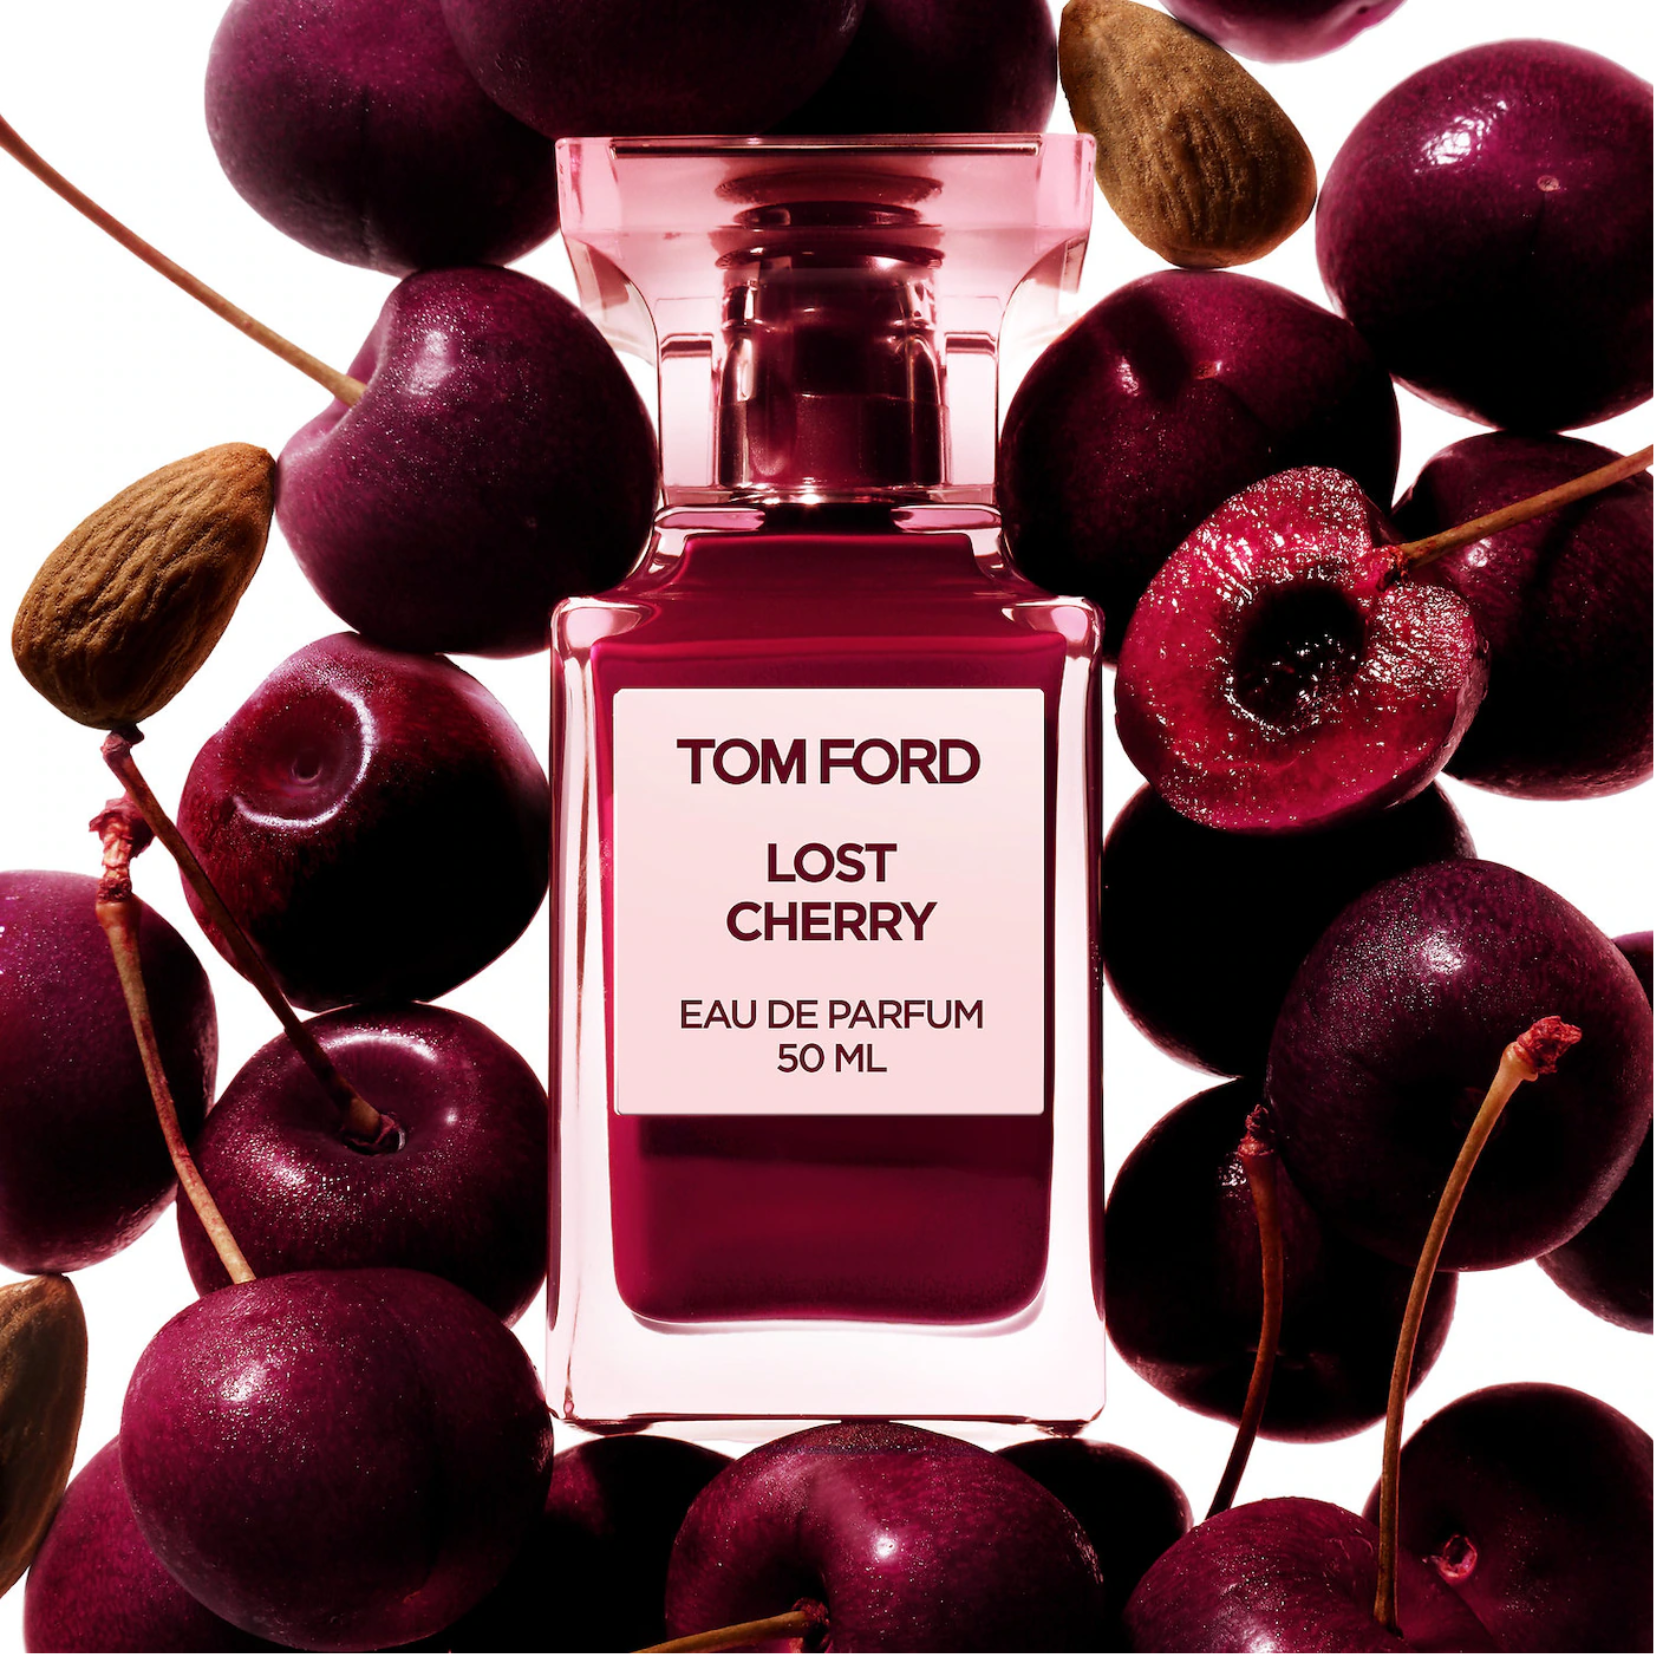 Tom Ford Lost Cherry Eau de Parfum - 50 ml